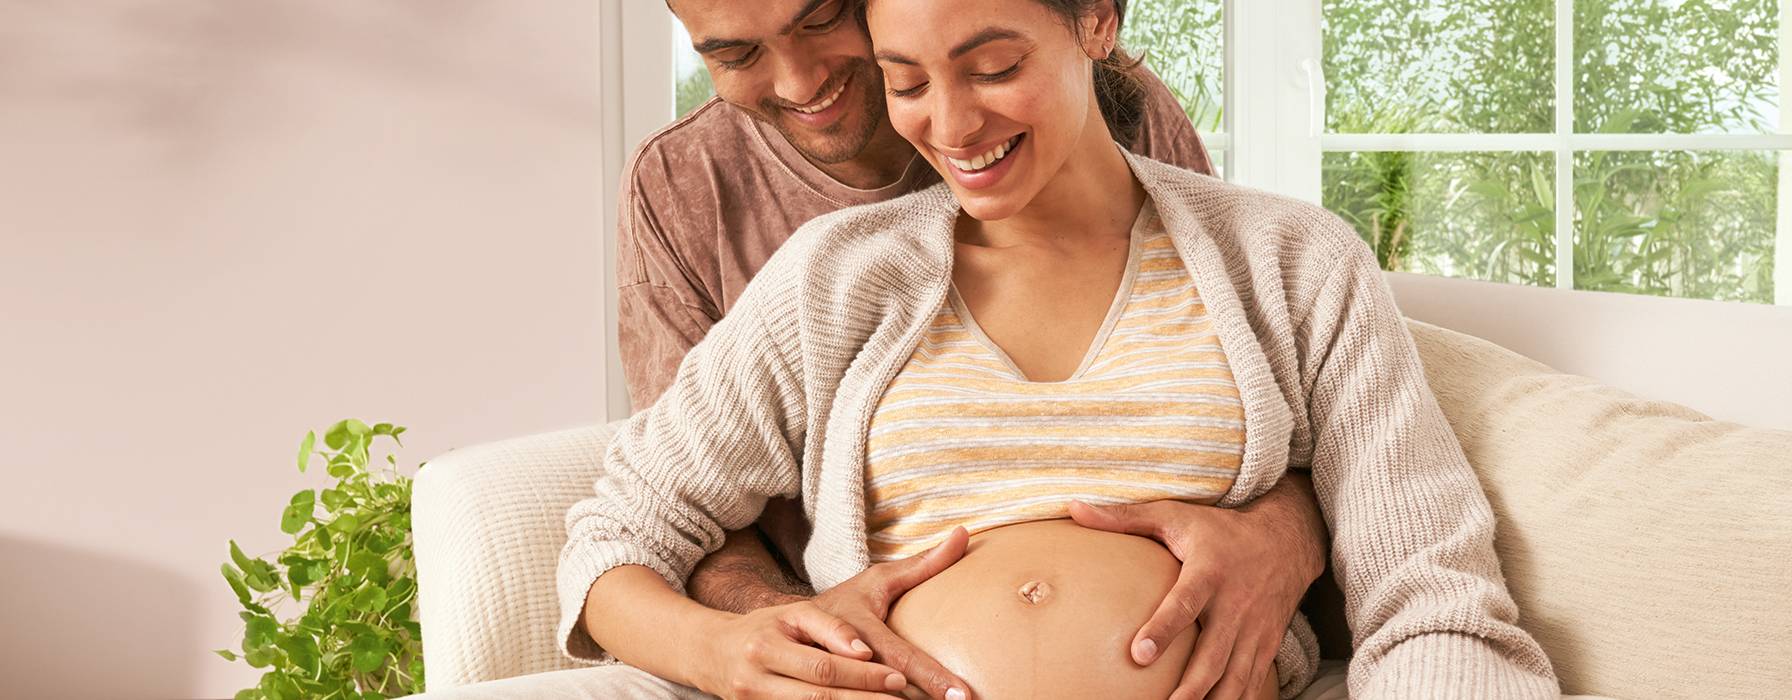 Position Matters in Pregnancy Massage - MASSAGE Magazine